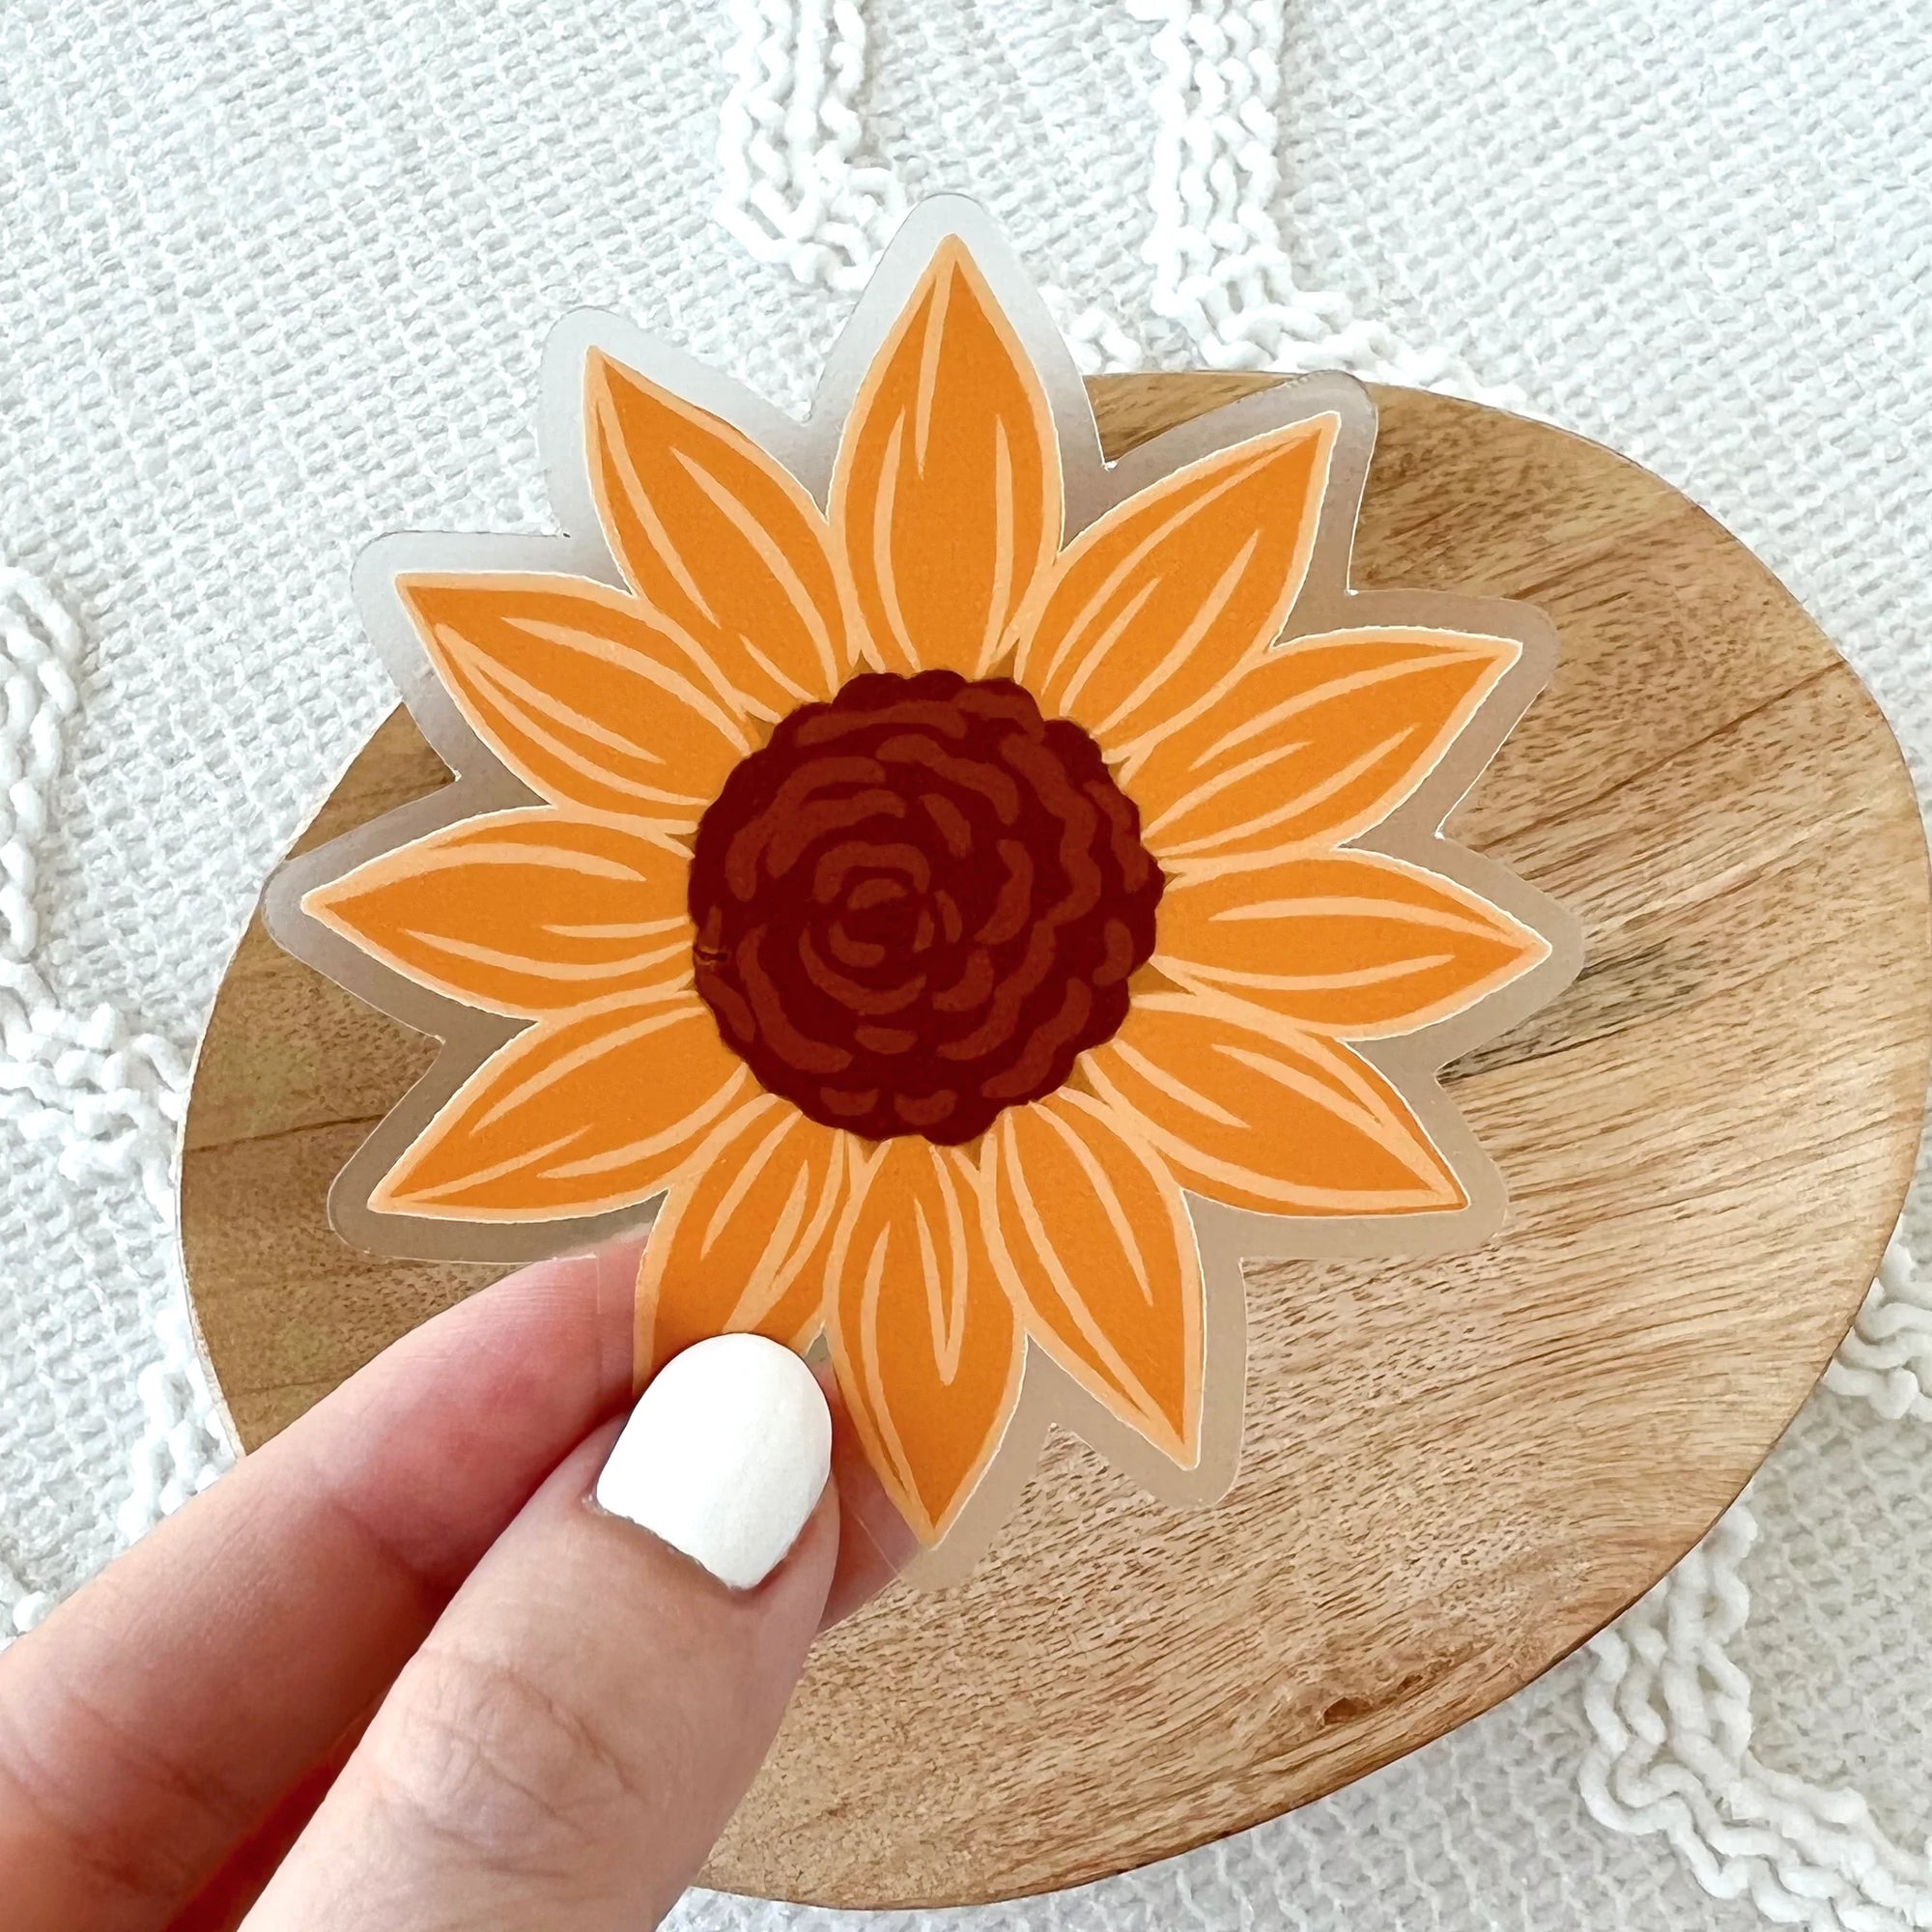 Sunflower Field Sticker